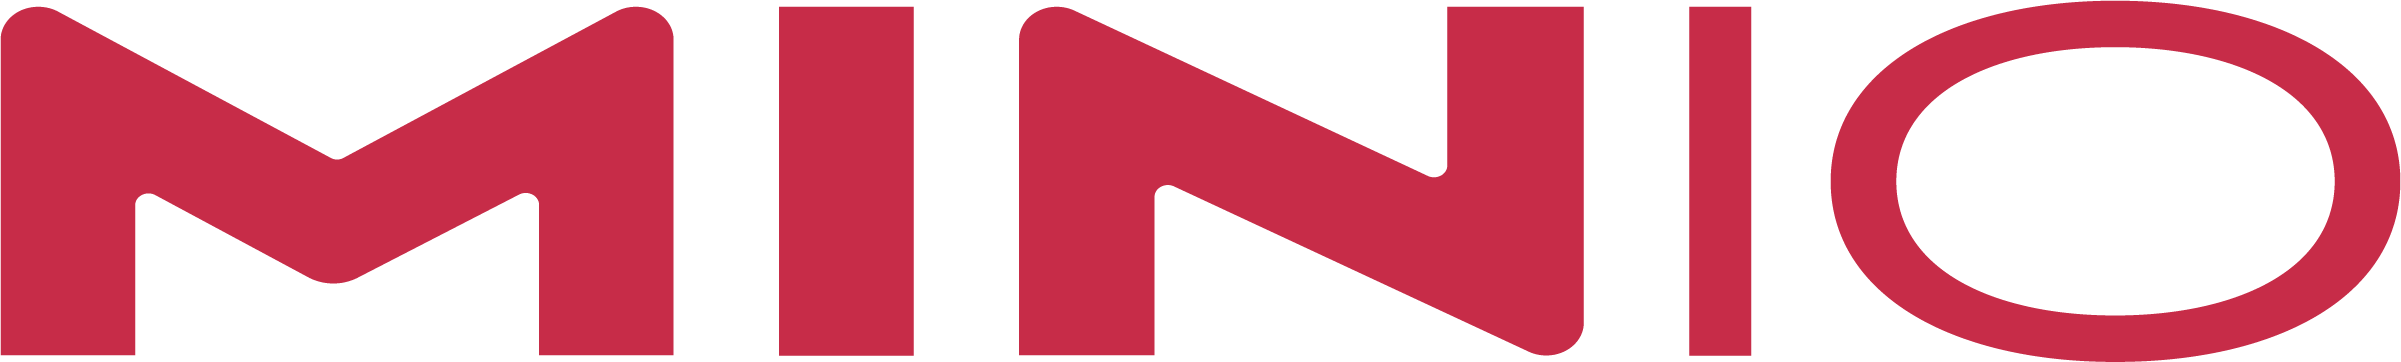 MinIO Logo